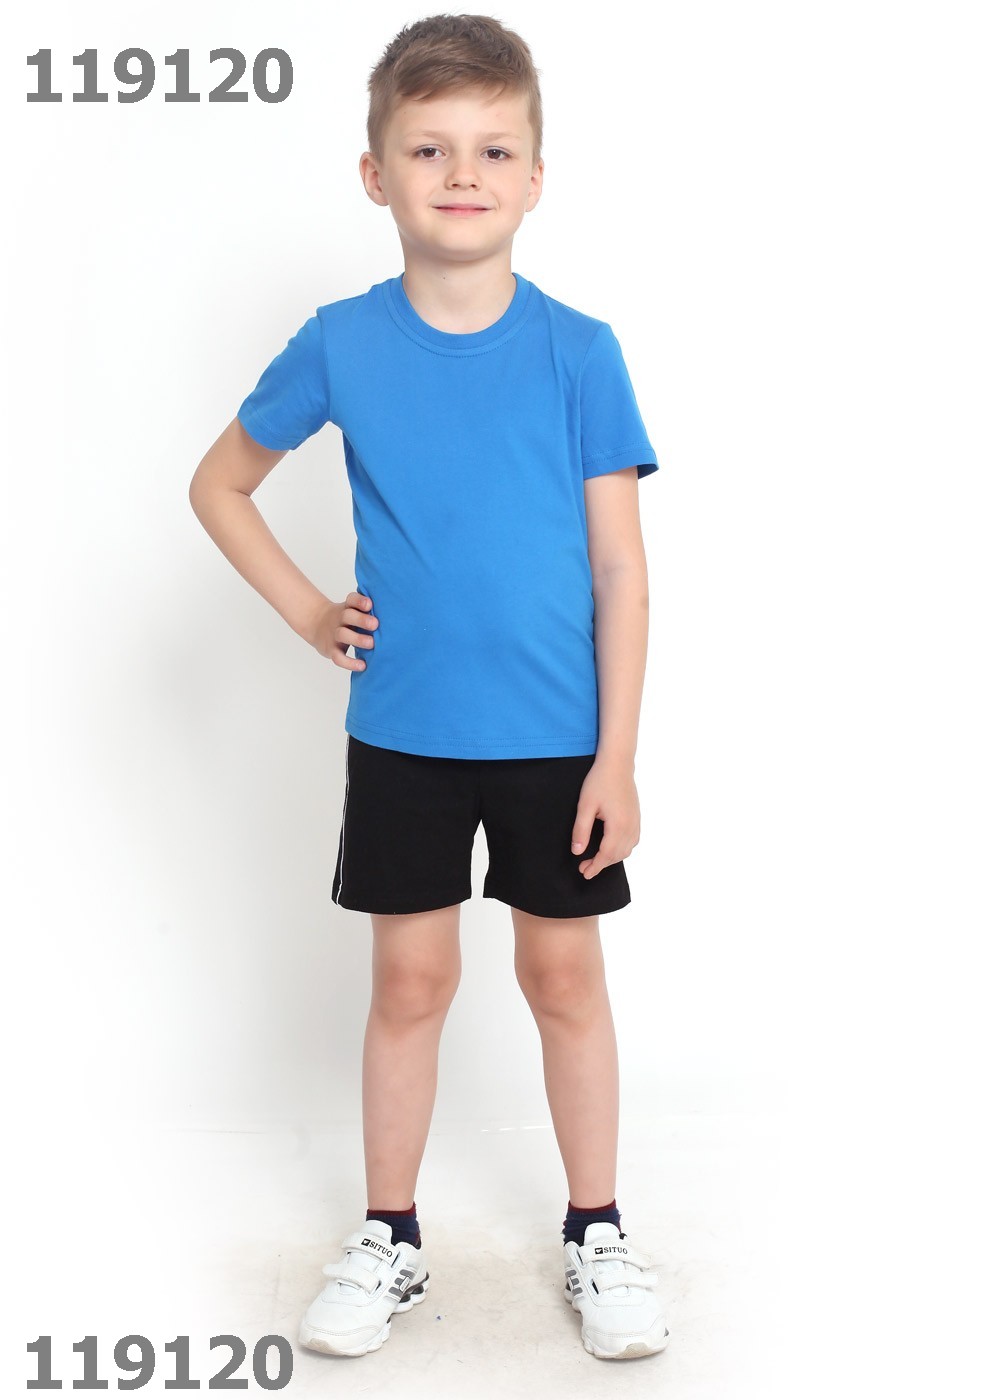 Футболка и шорты синие. Clever шорты детские 636161. Спортивные шорты для мальчика. Мальчик в полный рост. Мальчик в майке и шортах.